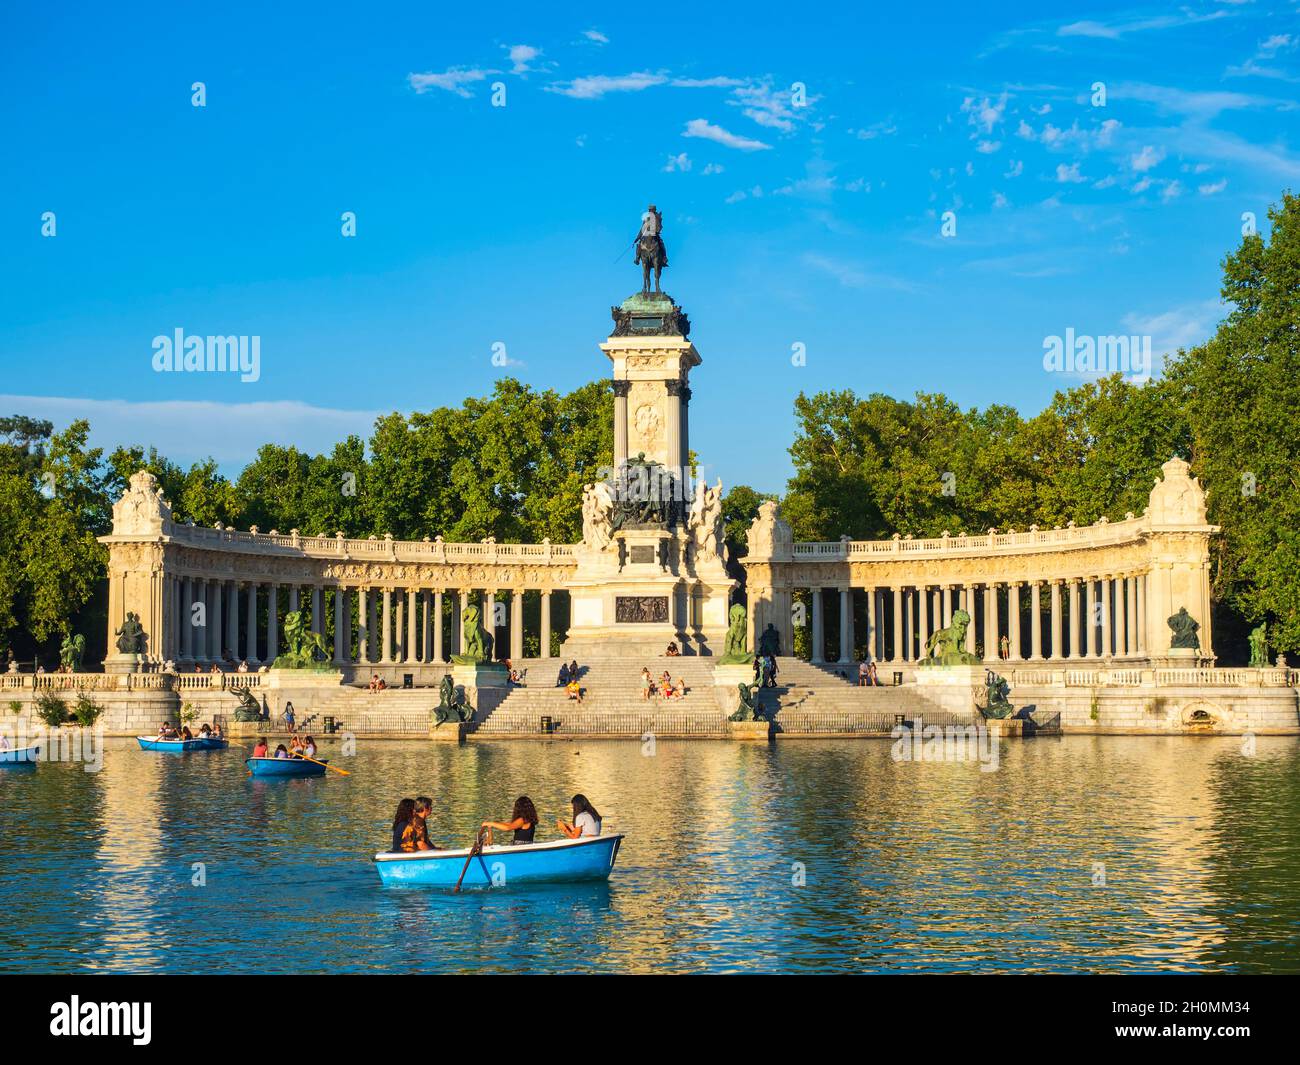 Madrid, España. 08/04/2021. La gente de todas las edades se divierte navegando con los patos en el estanque del Parque del Buen Retiro de Madrid. Foto de stock